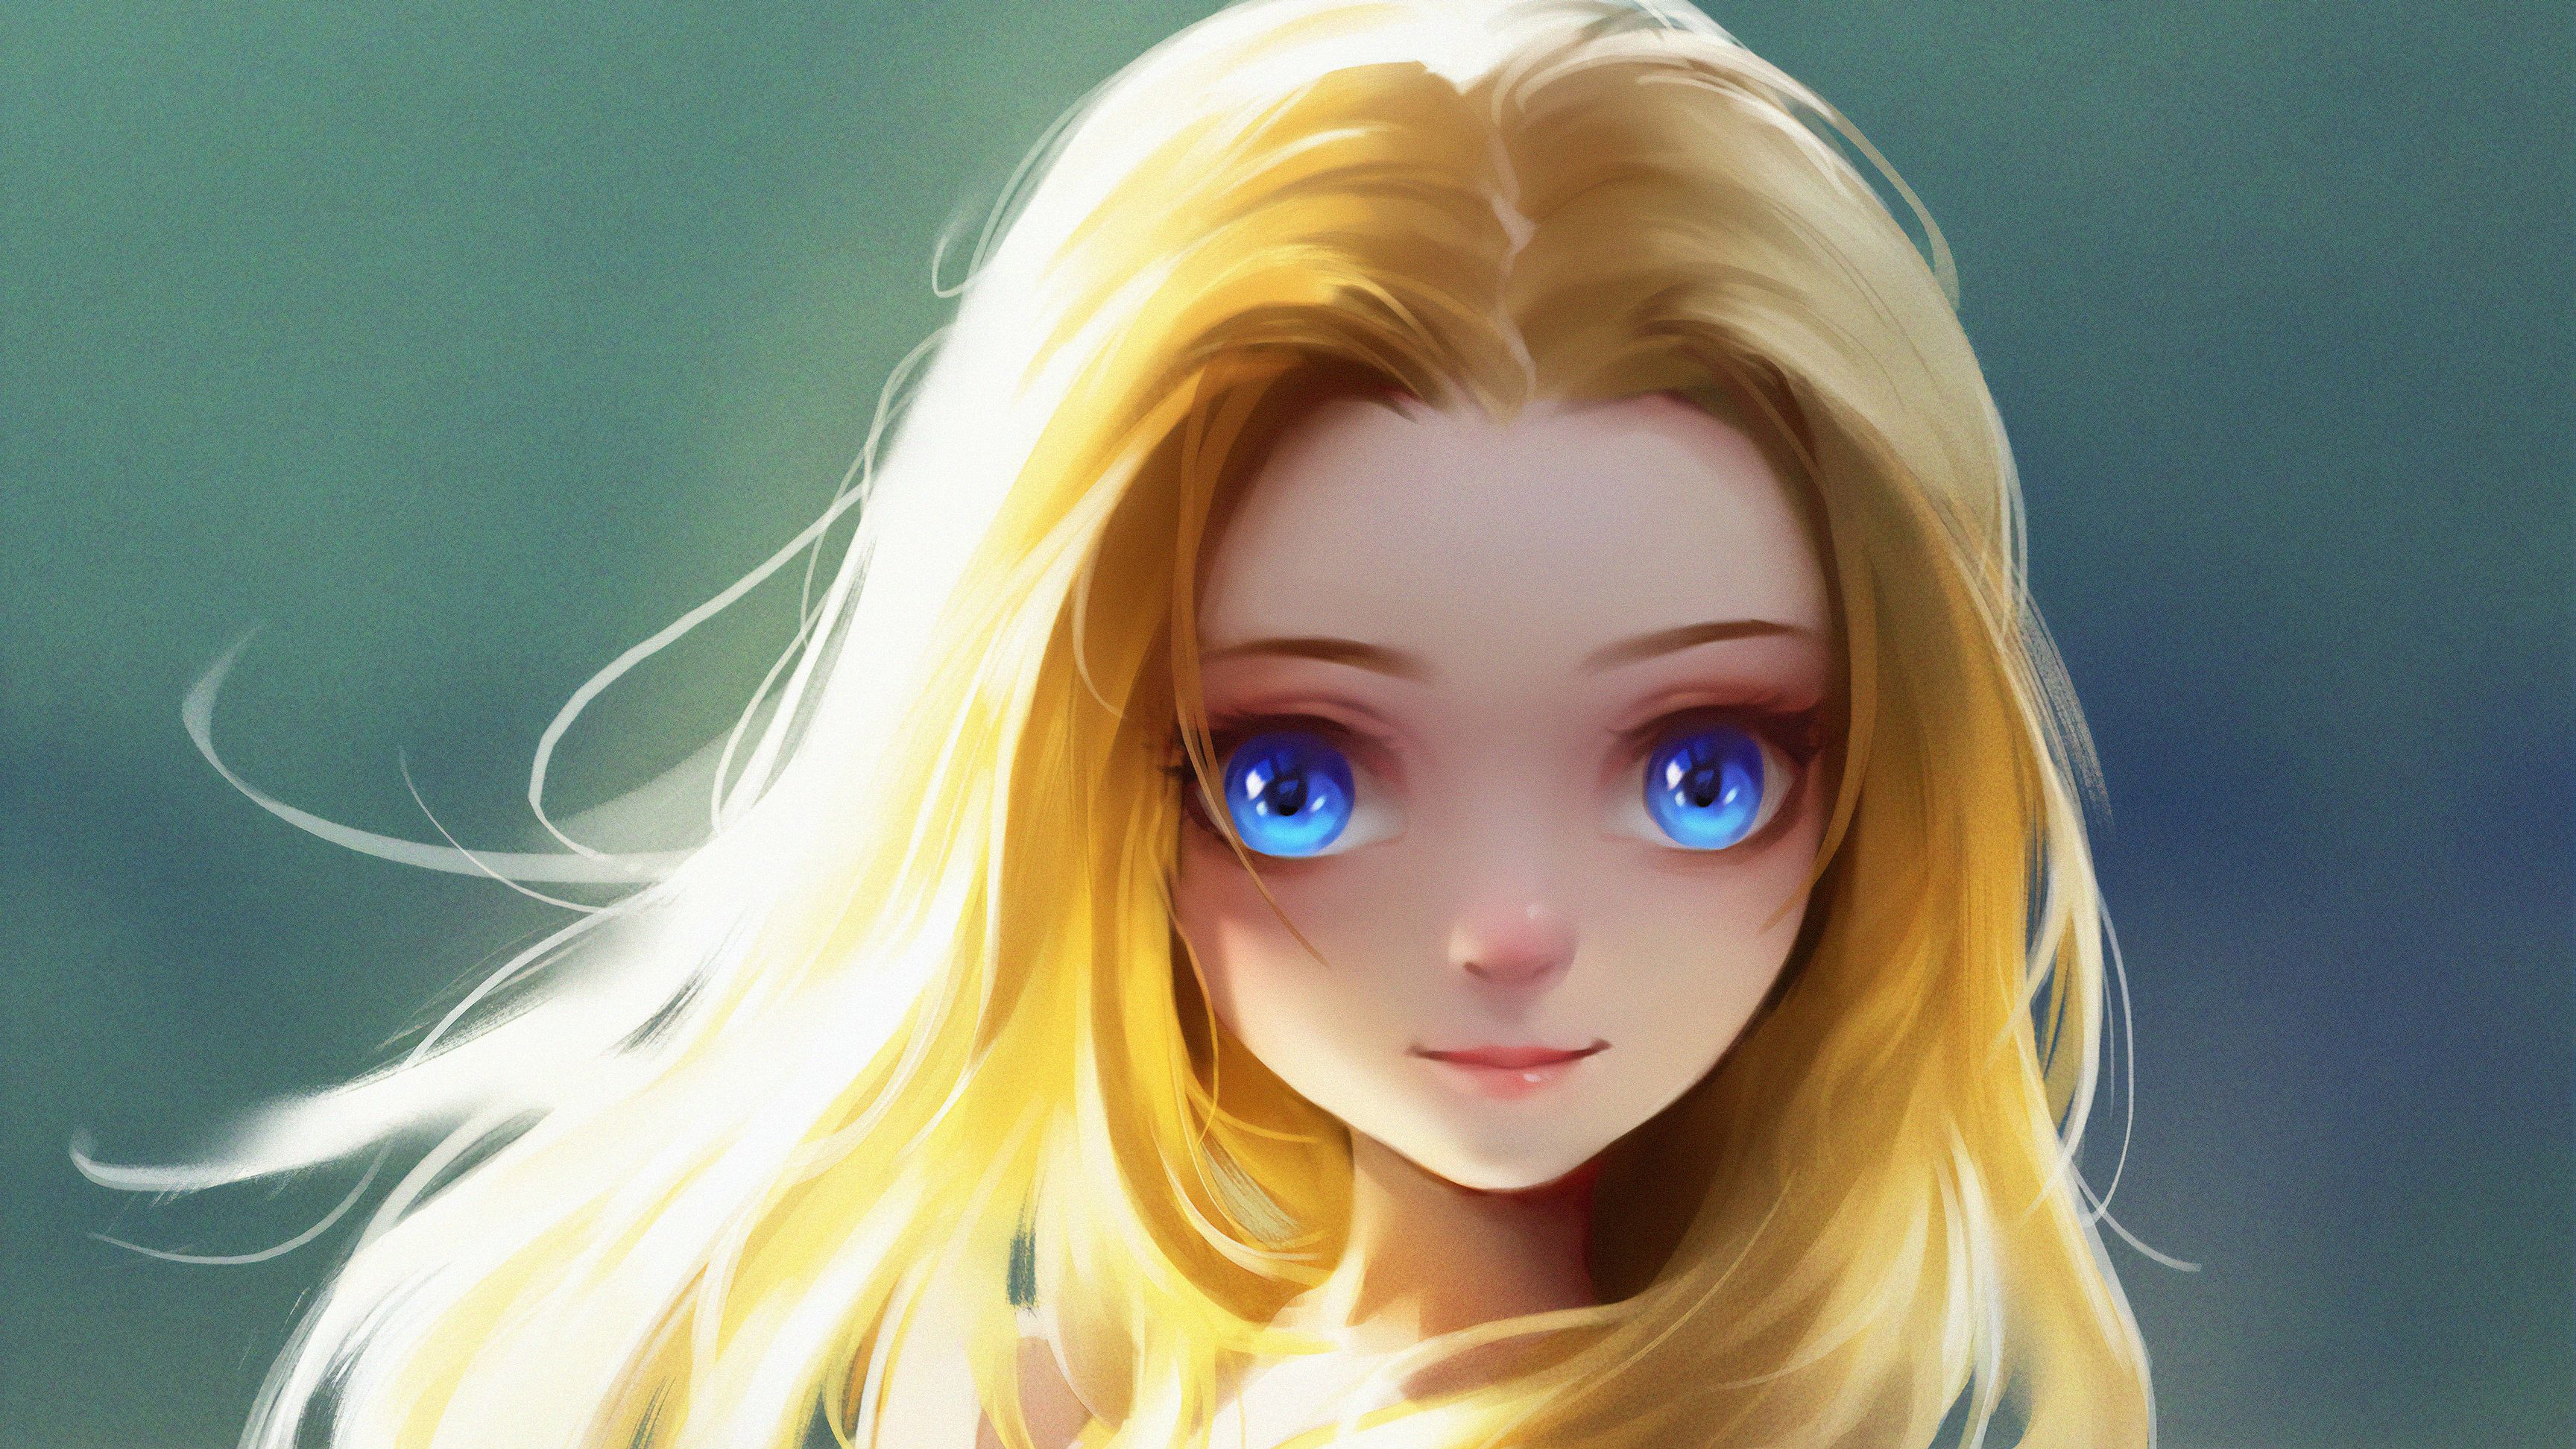 Cute Little Blonde Girl Blue Eyes Digital Art, HD Artist, 4k